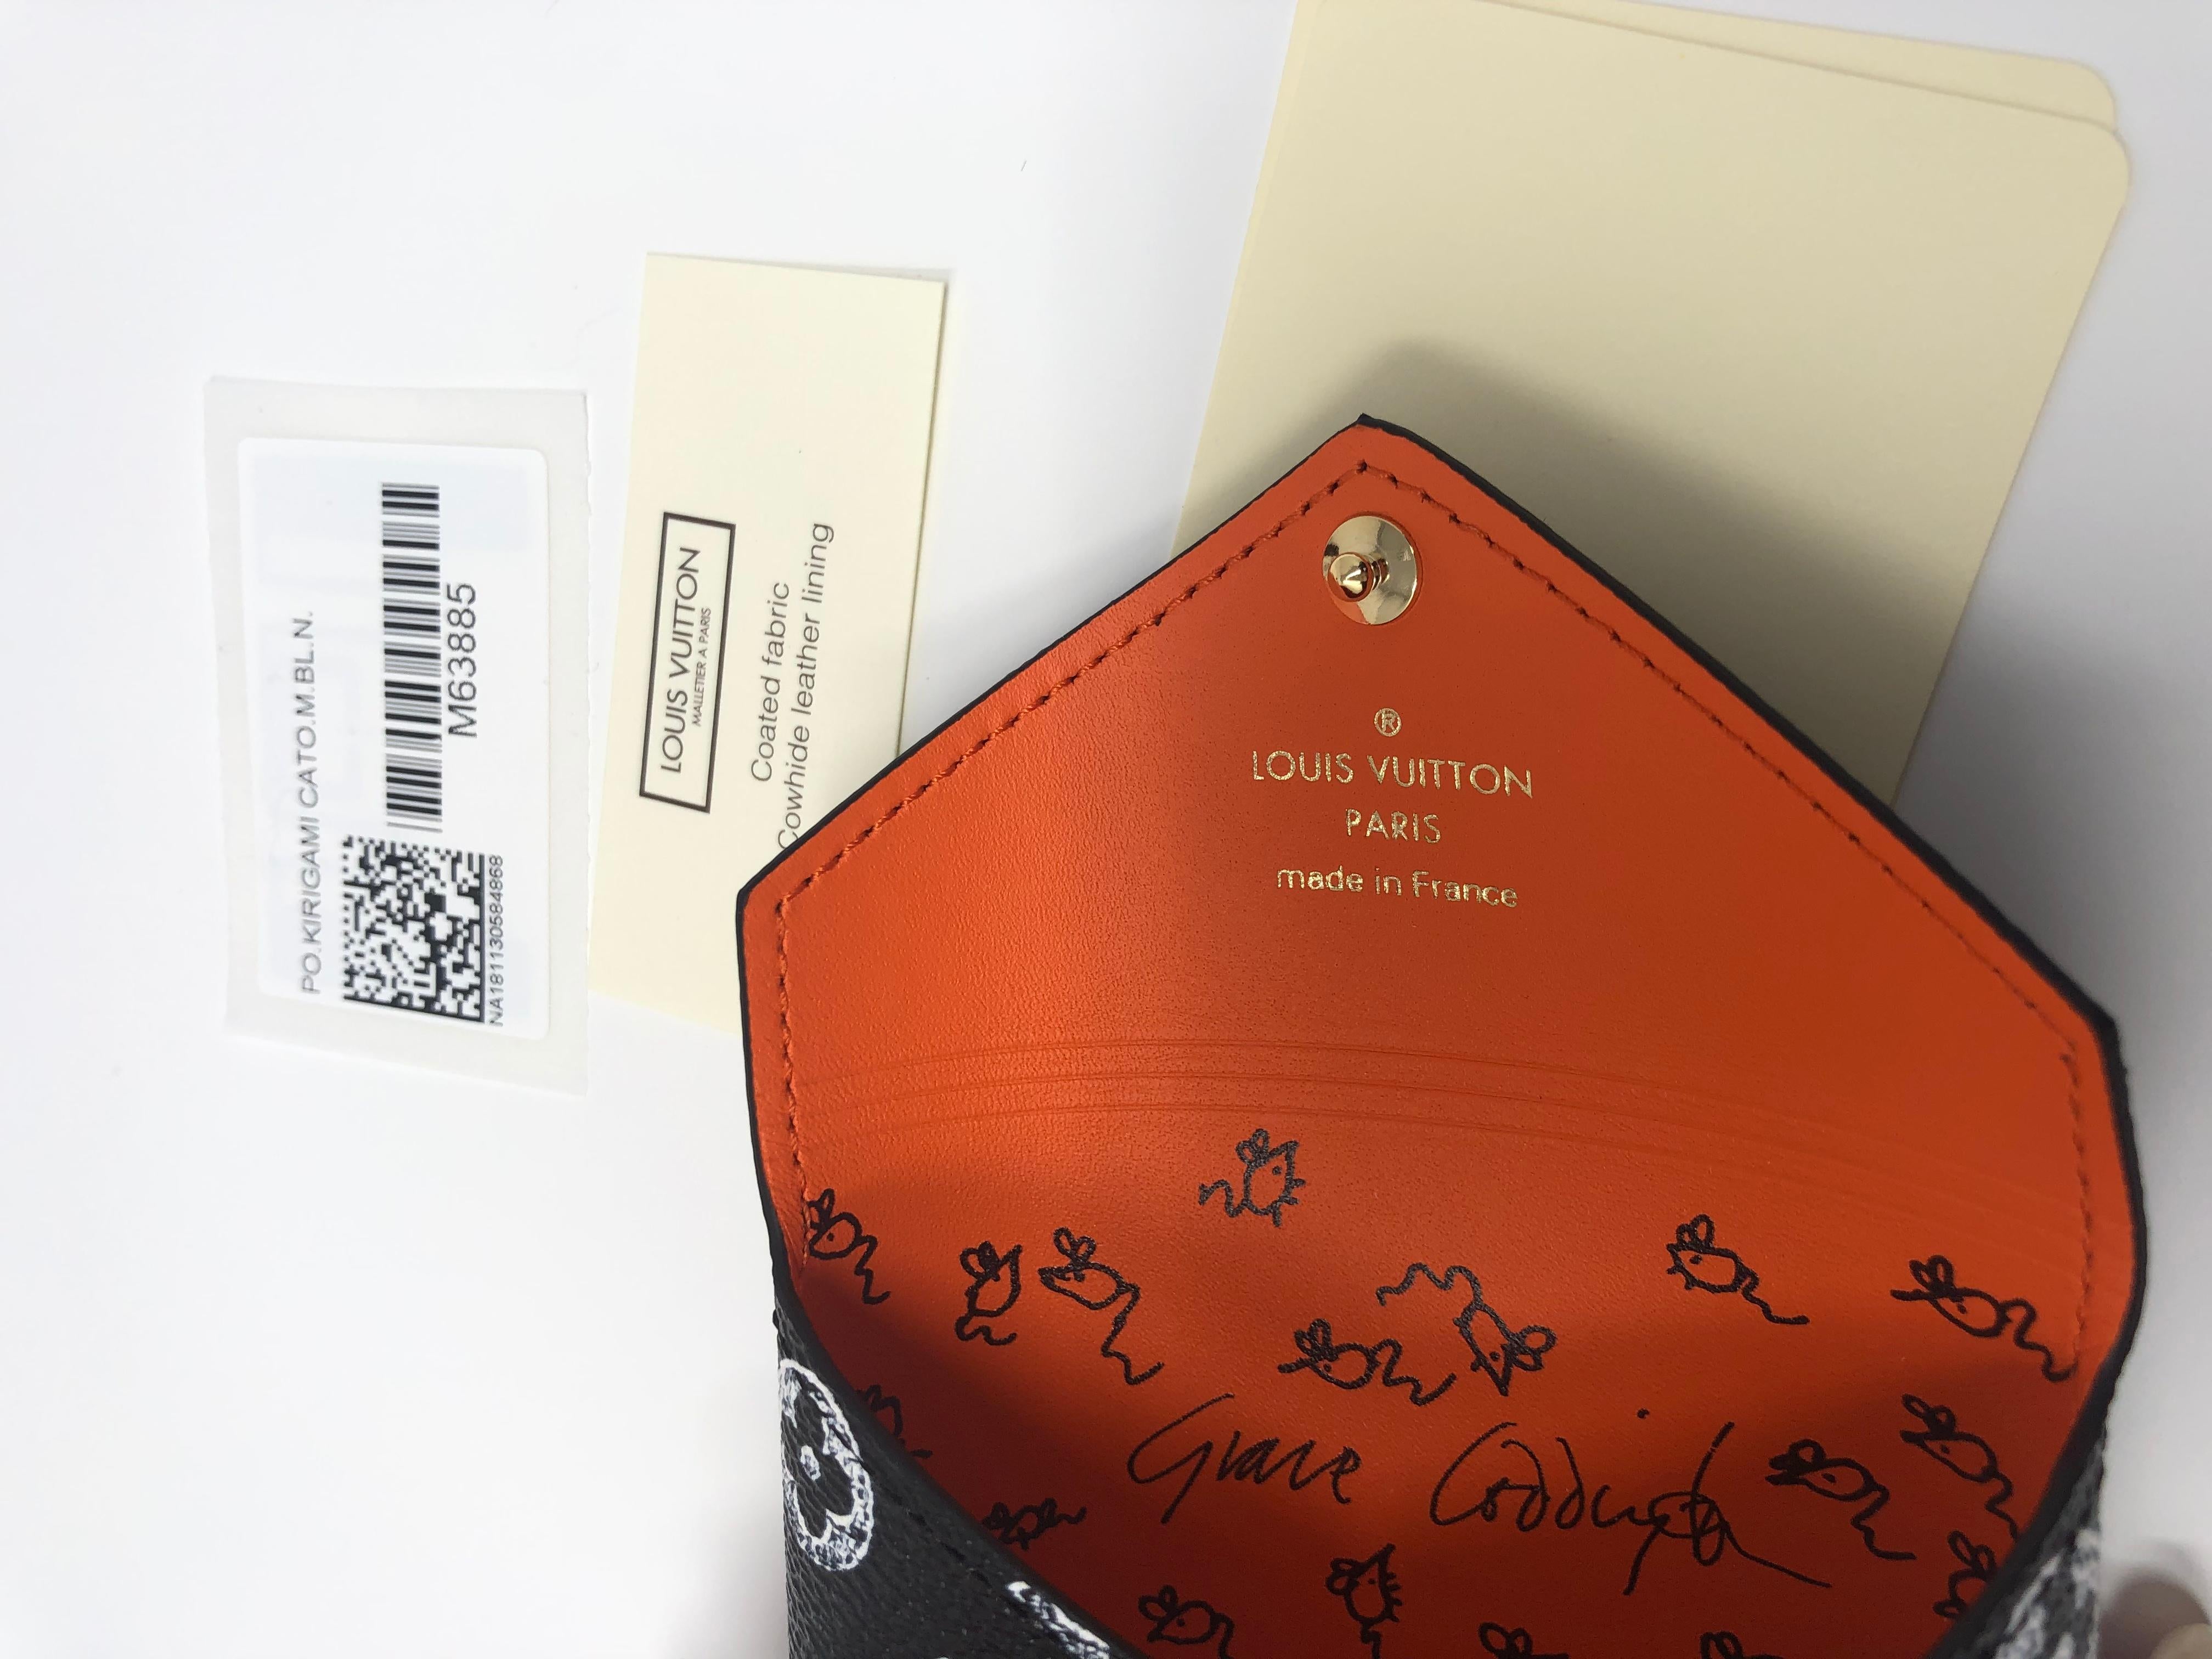 Louis Vuitton Catogramme - Pochette Grace Coddington 7